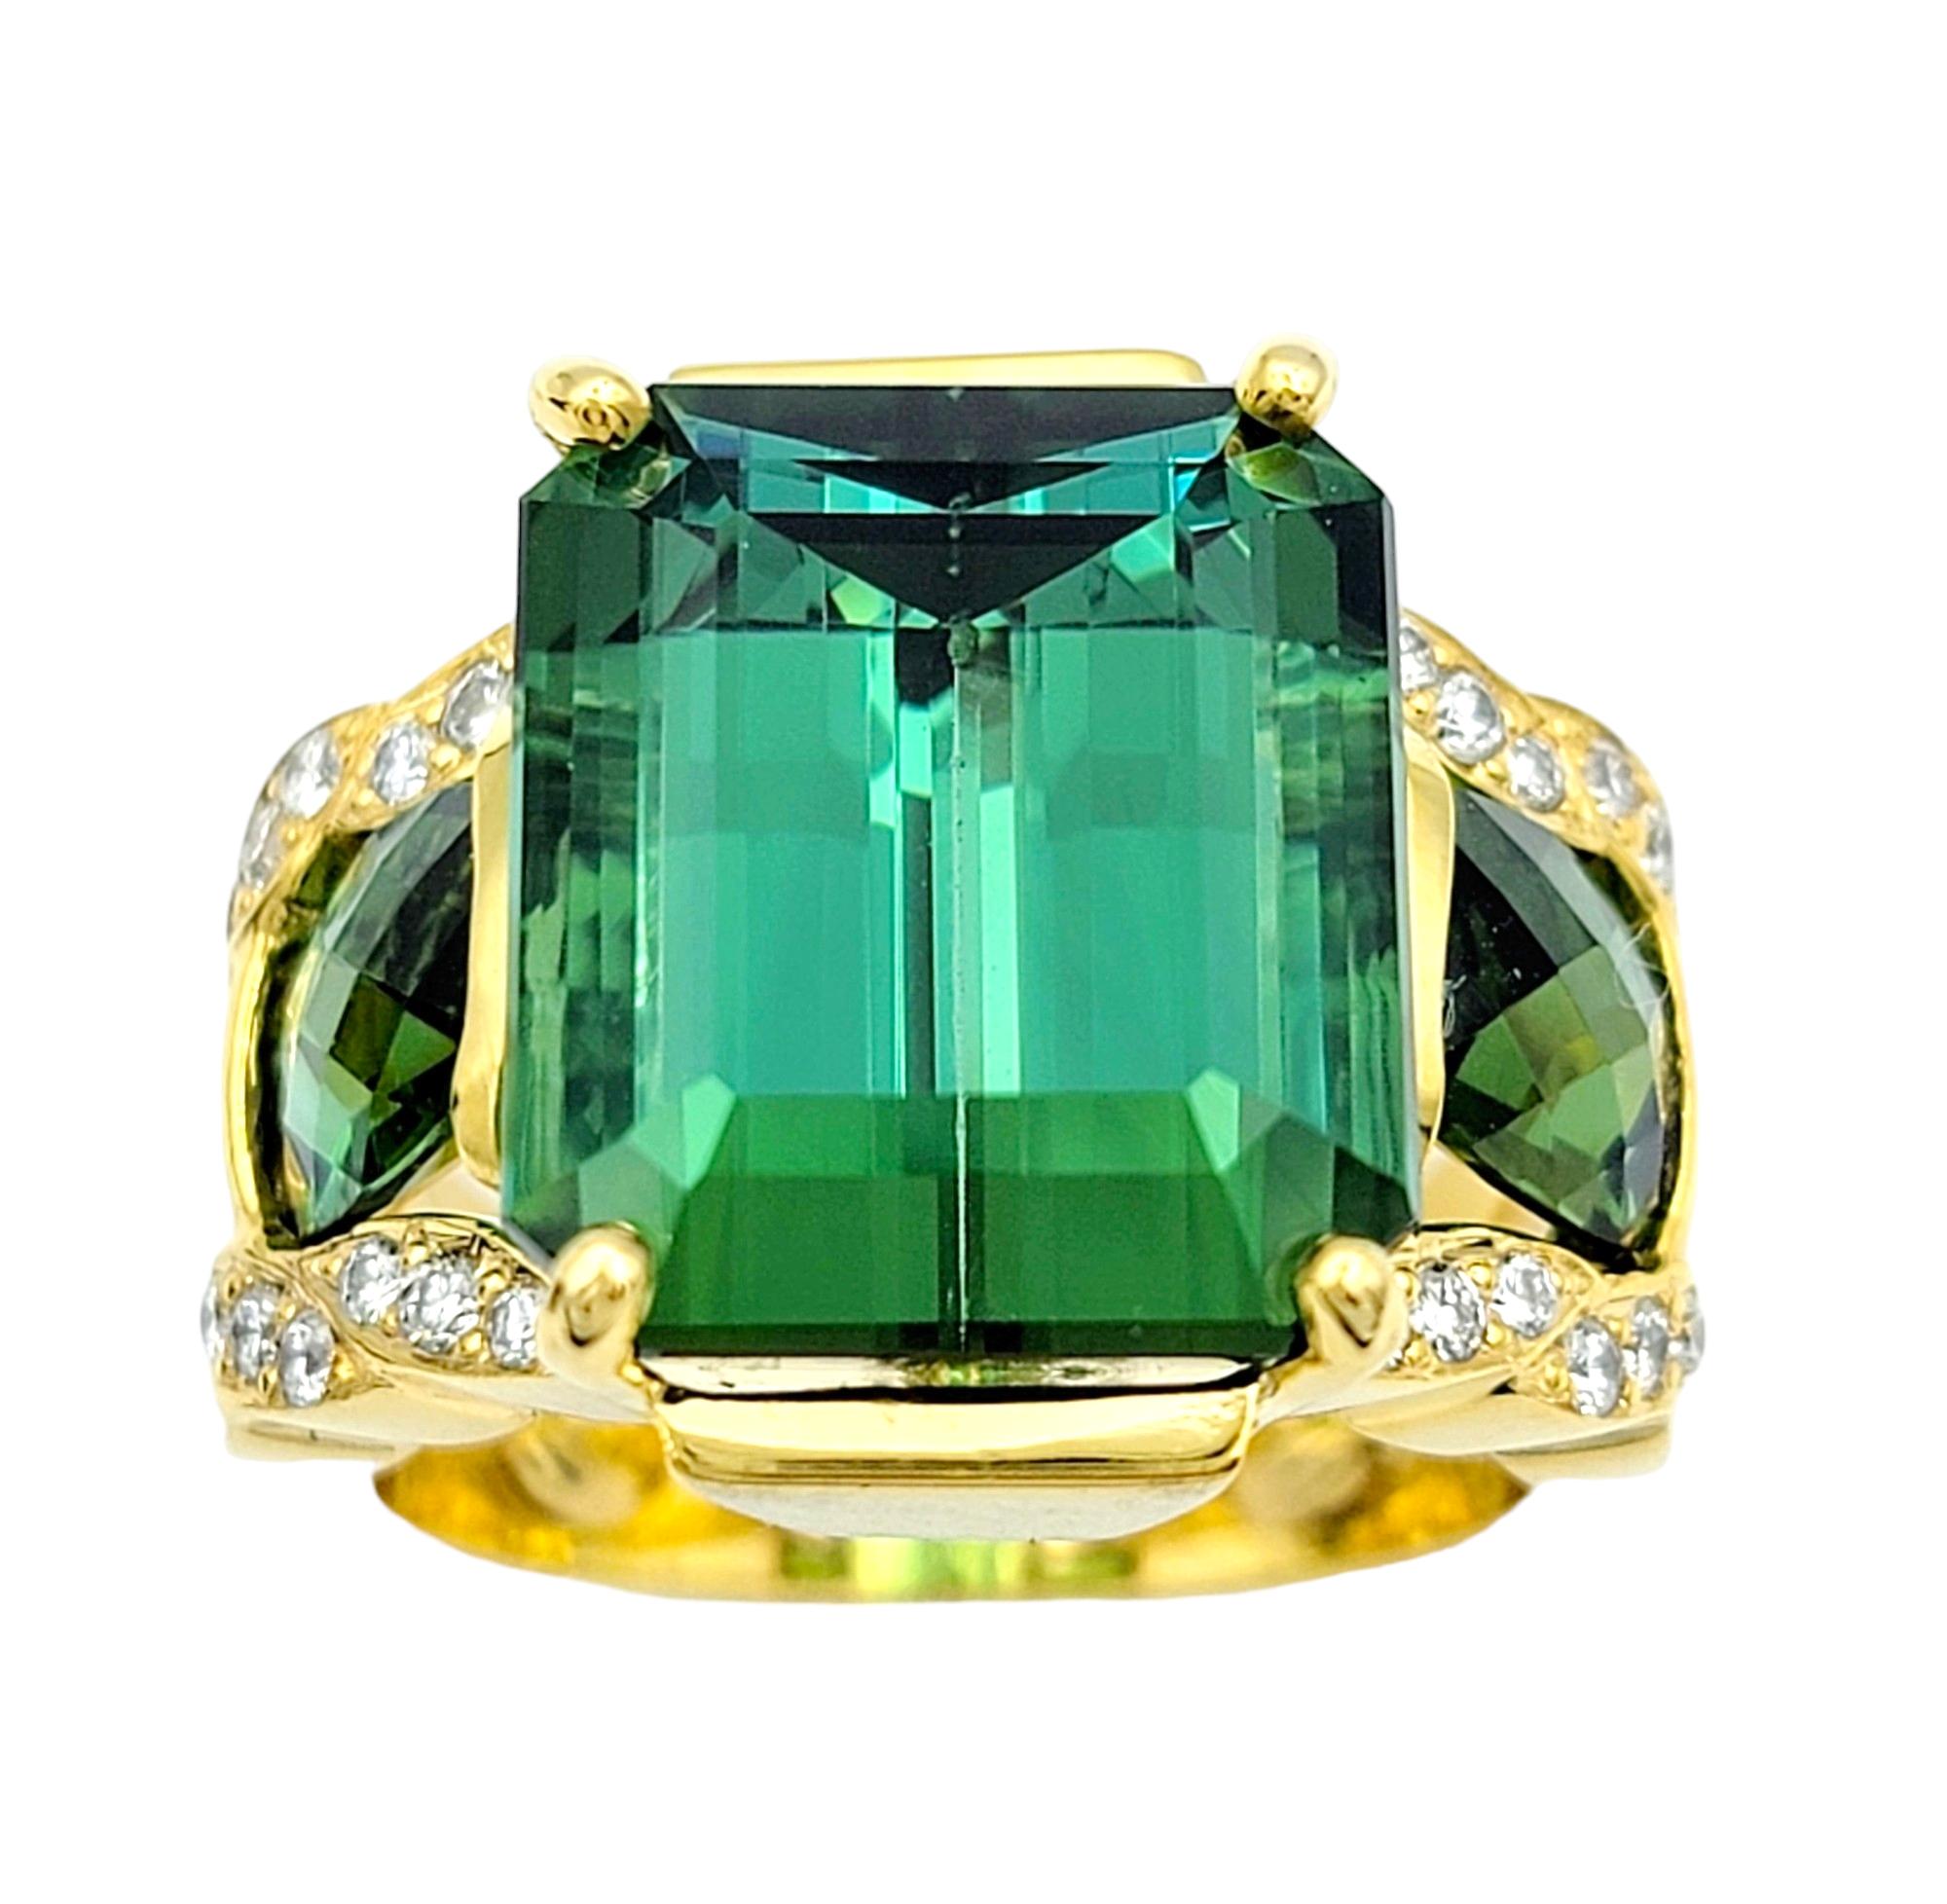 Taille de l'anneau : 7

Rehaussez votre collection de bijoux avec cette exquise bague à trois pierres en tourmaline verte. En son cœur se trouve une tourmaline captivante de 13,25 carats, taillée en émeraude, qui respire l'élégance et la